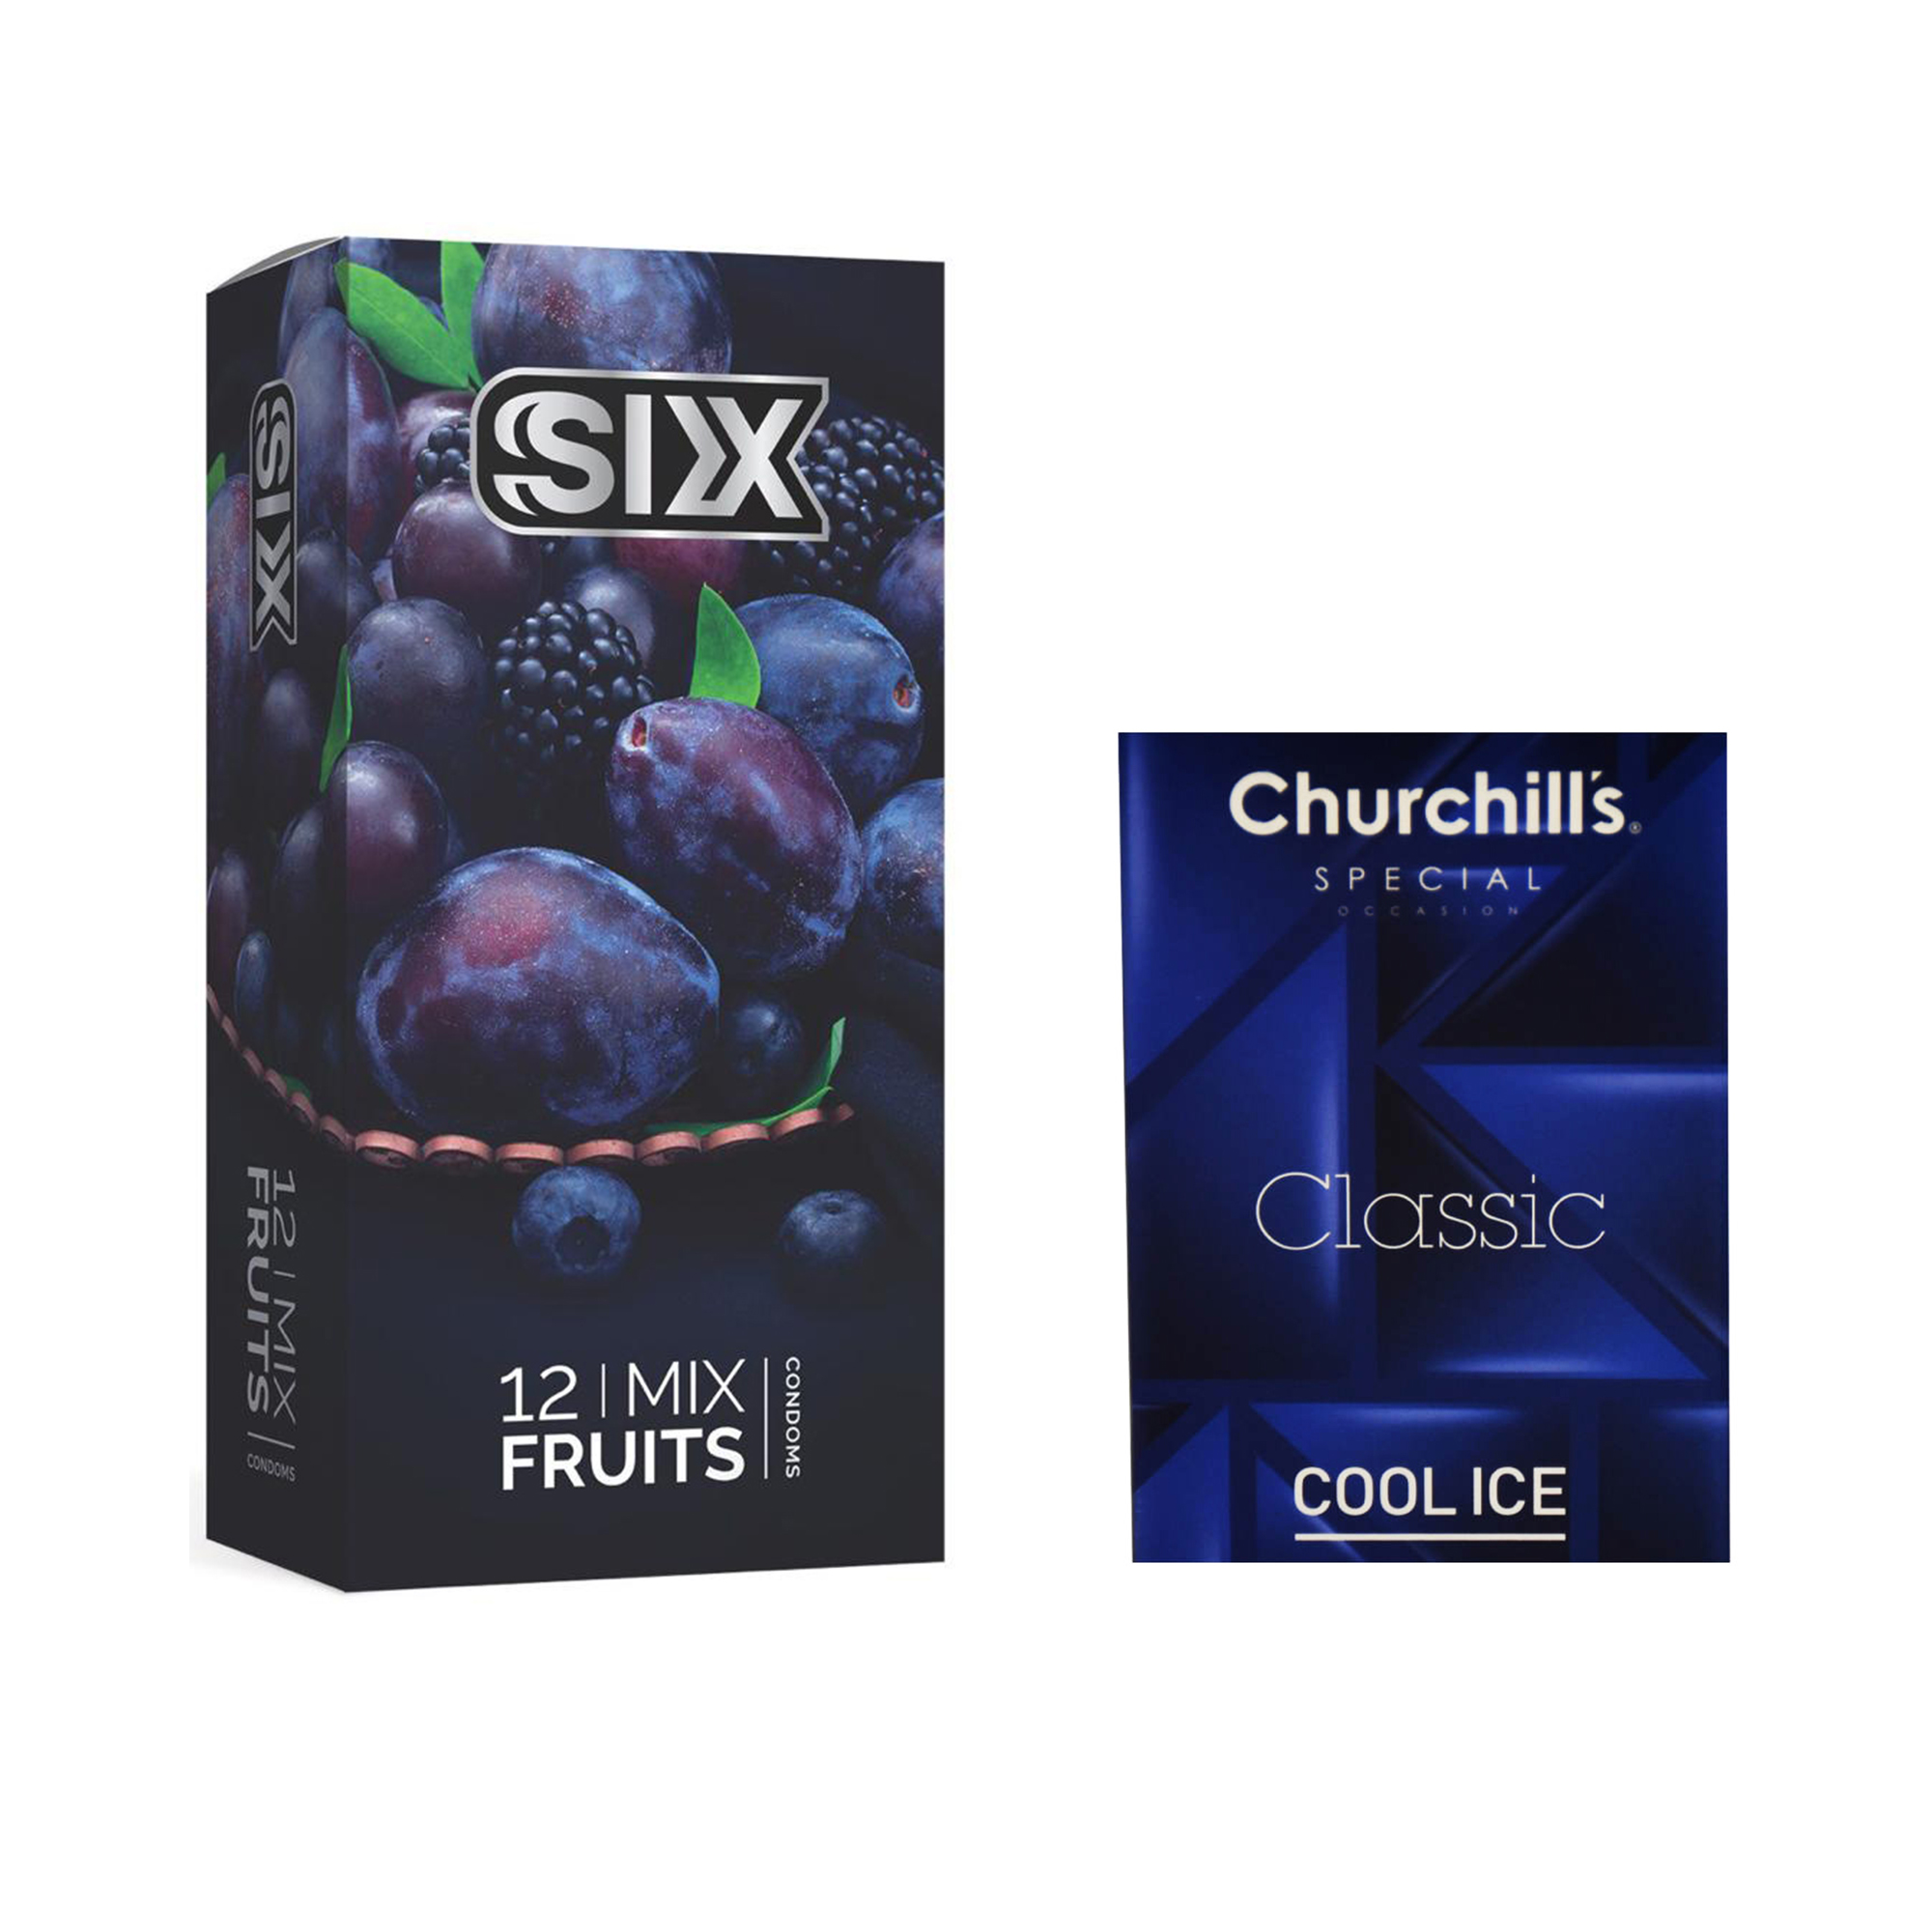 کاندوم سیکس مدل Mix Fruits بسته 12 عددی به همراه کاندوم چرچیلز مدل Cool Ice بسته 3 عددی